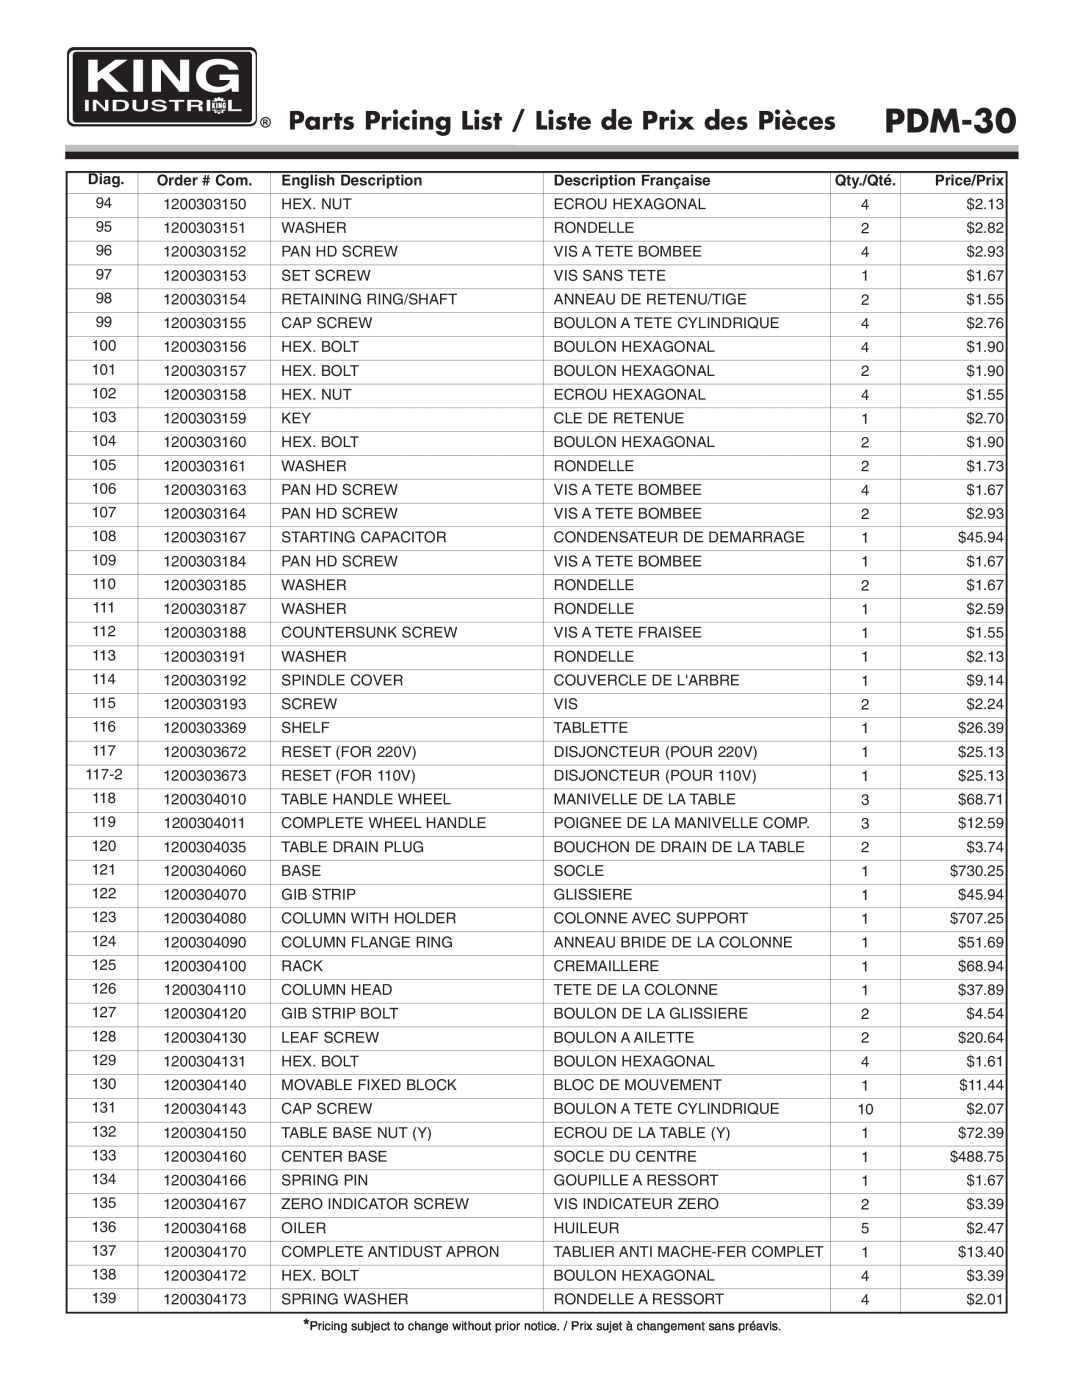 King Canada PDM-30 Parts Pricing List / Liste de Prix des Pièces, Diag, Order # Com, English Description, Qty./Qté 